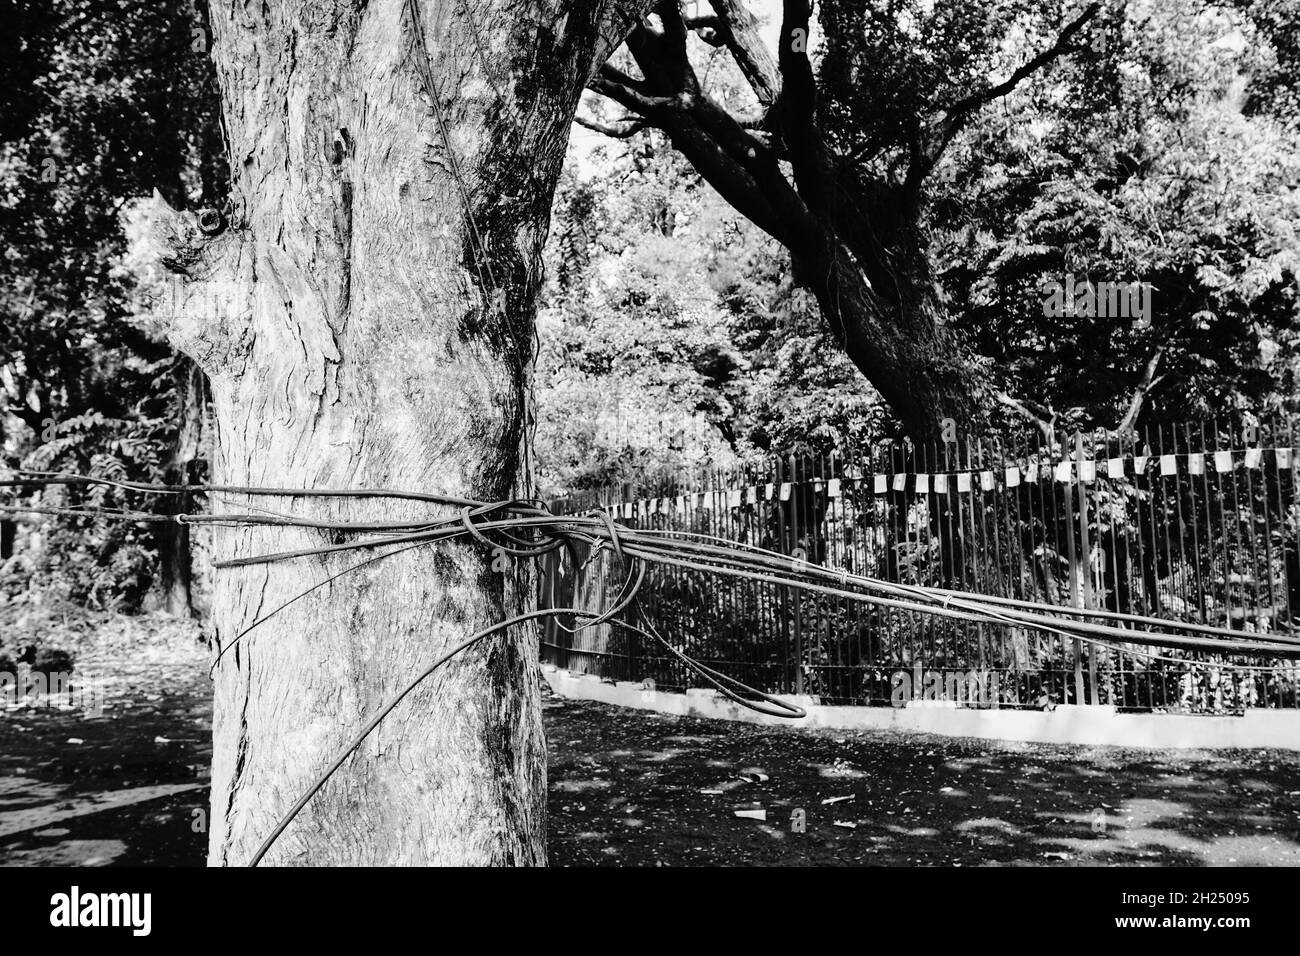 Schwarz-weißer Baumstamm, gebunden mit Kabeln und Drähten. Symbolisches Bild der Zerstörung der Natur durch die zivilisierte Gesellschaft. Klimawandel, Bedrohung für natura Stockfoto